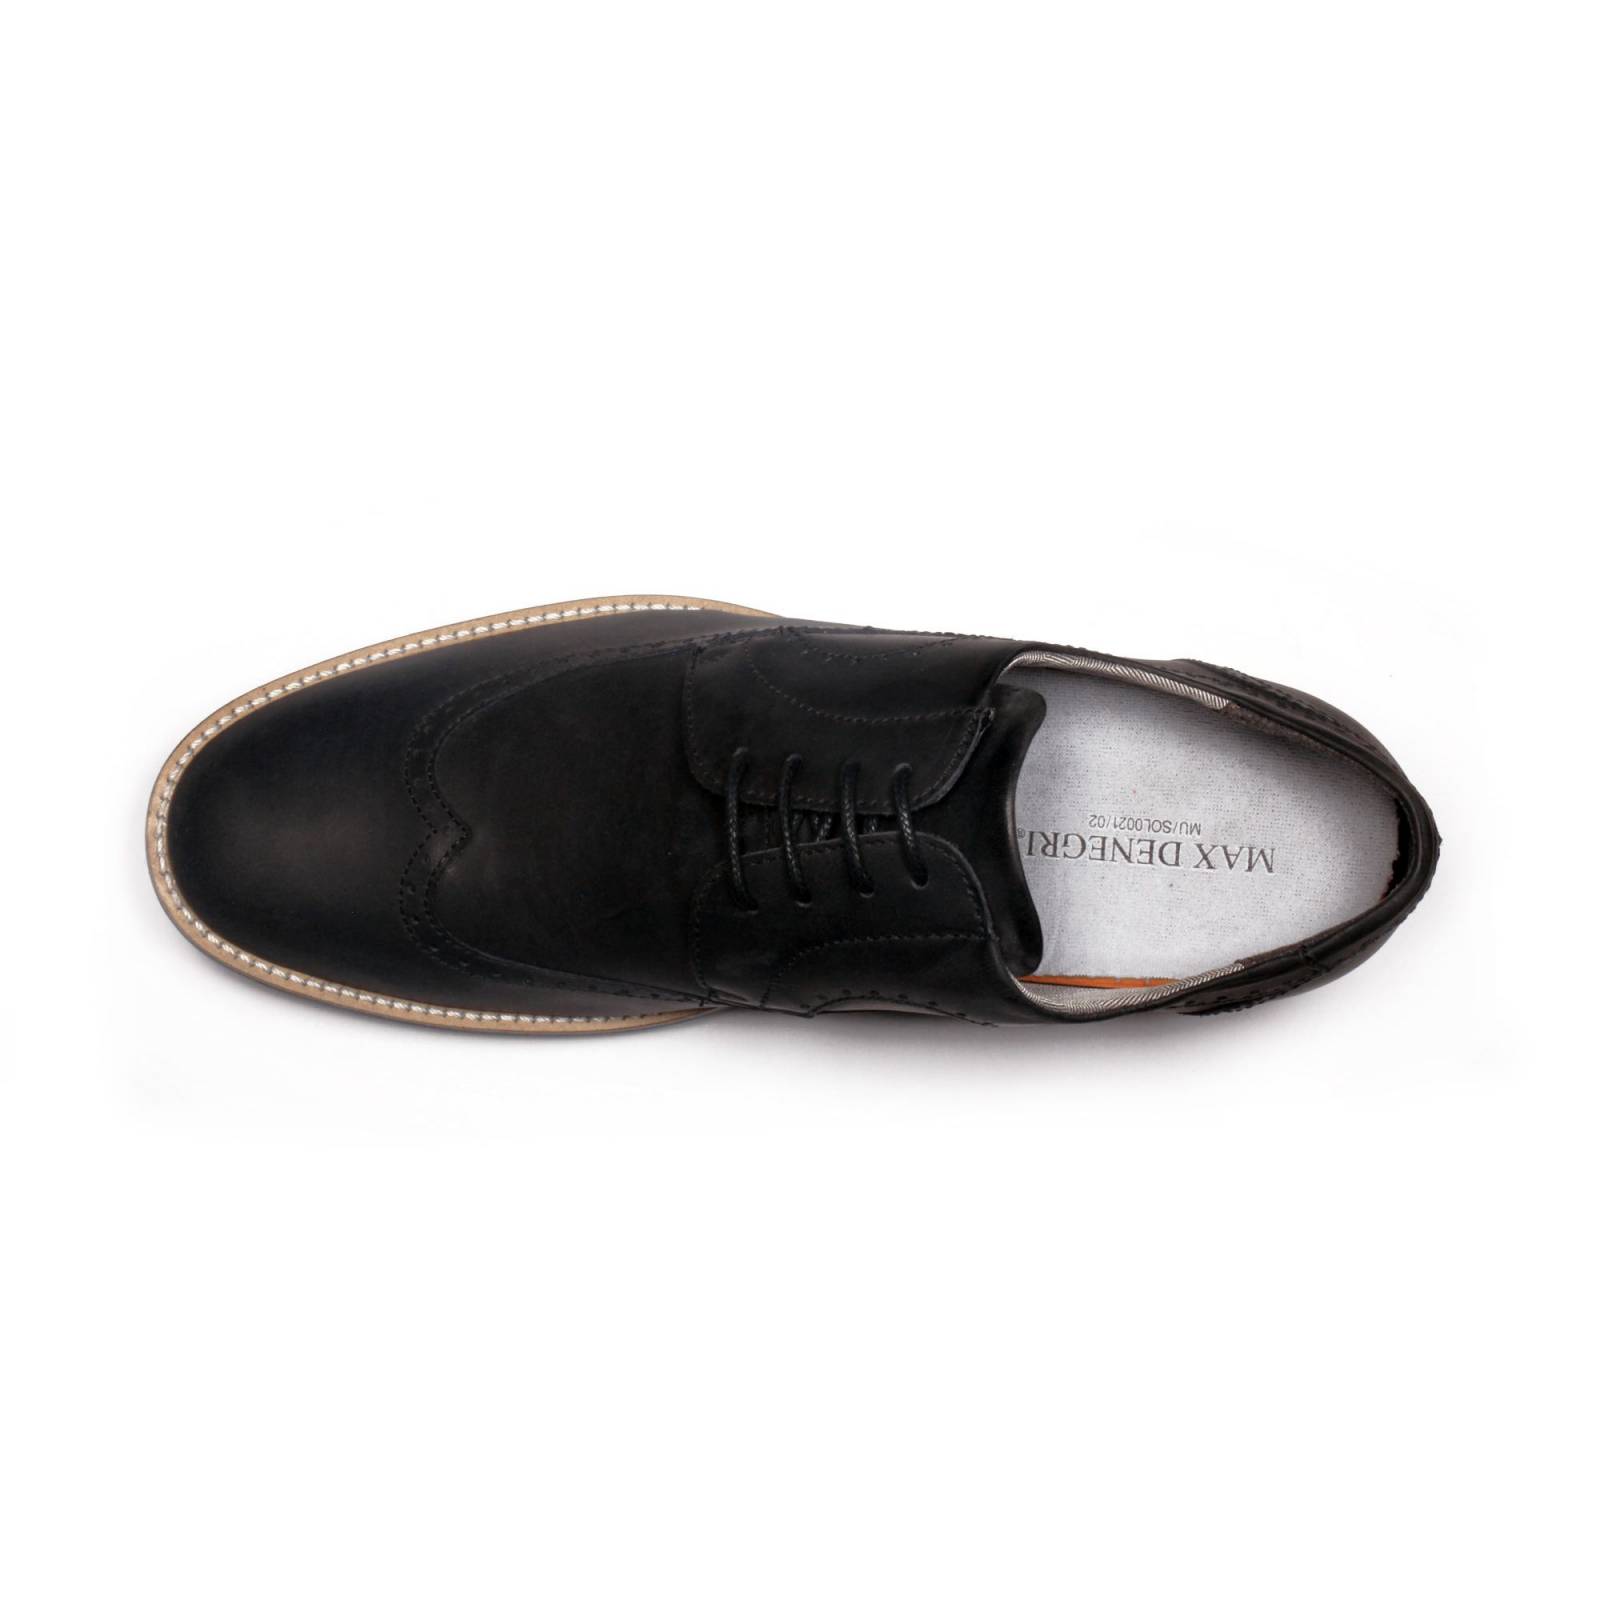 Zapato Casual Oxford Negro Max Denegri +7cms De Altura